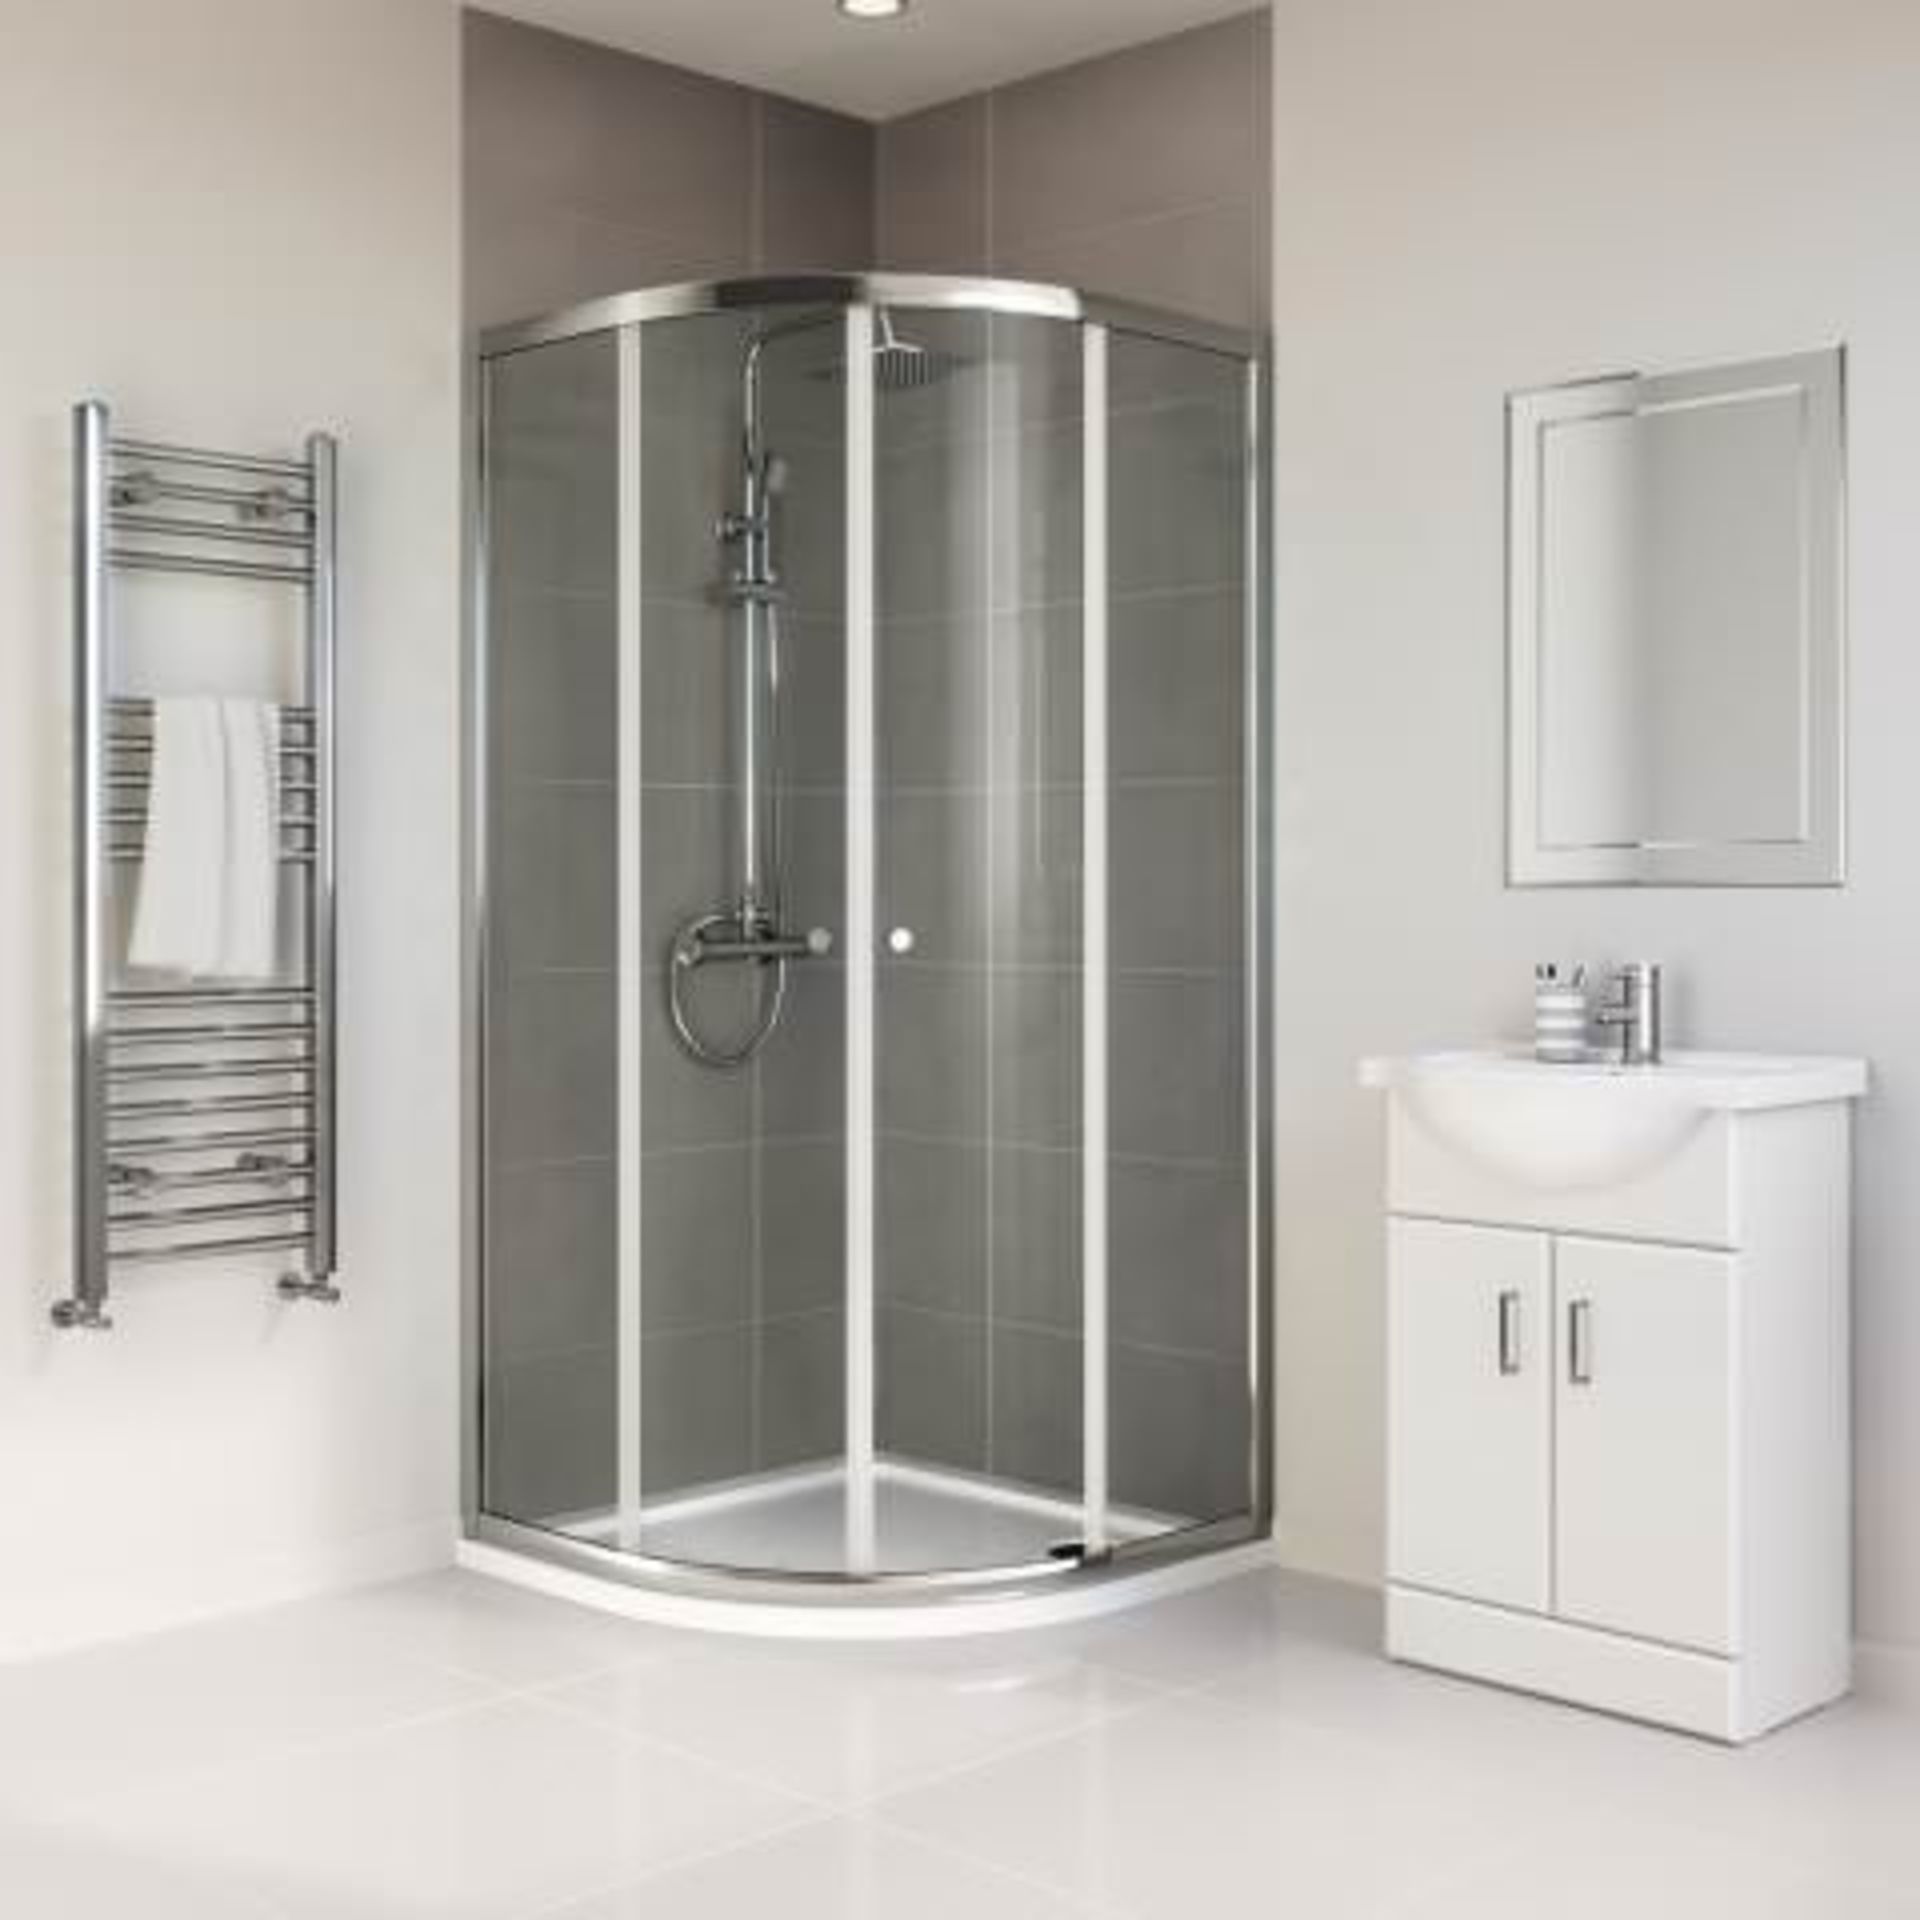 NEW (C202) 900x900mm - Elements Quadrant Shower Enclosure. RRP £229.99. Budget Solution Our en... - Image 3 of 3